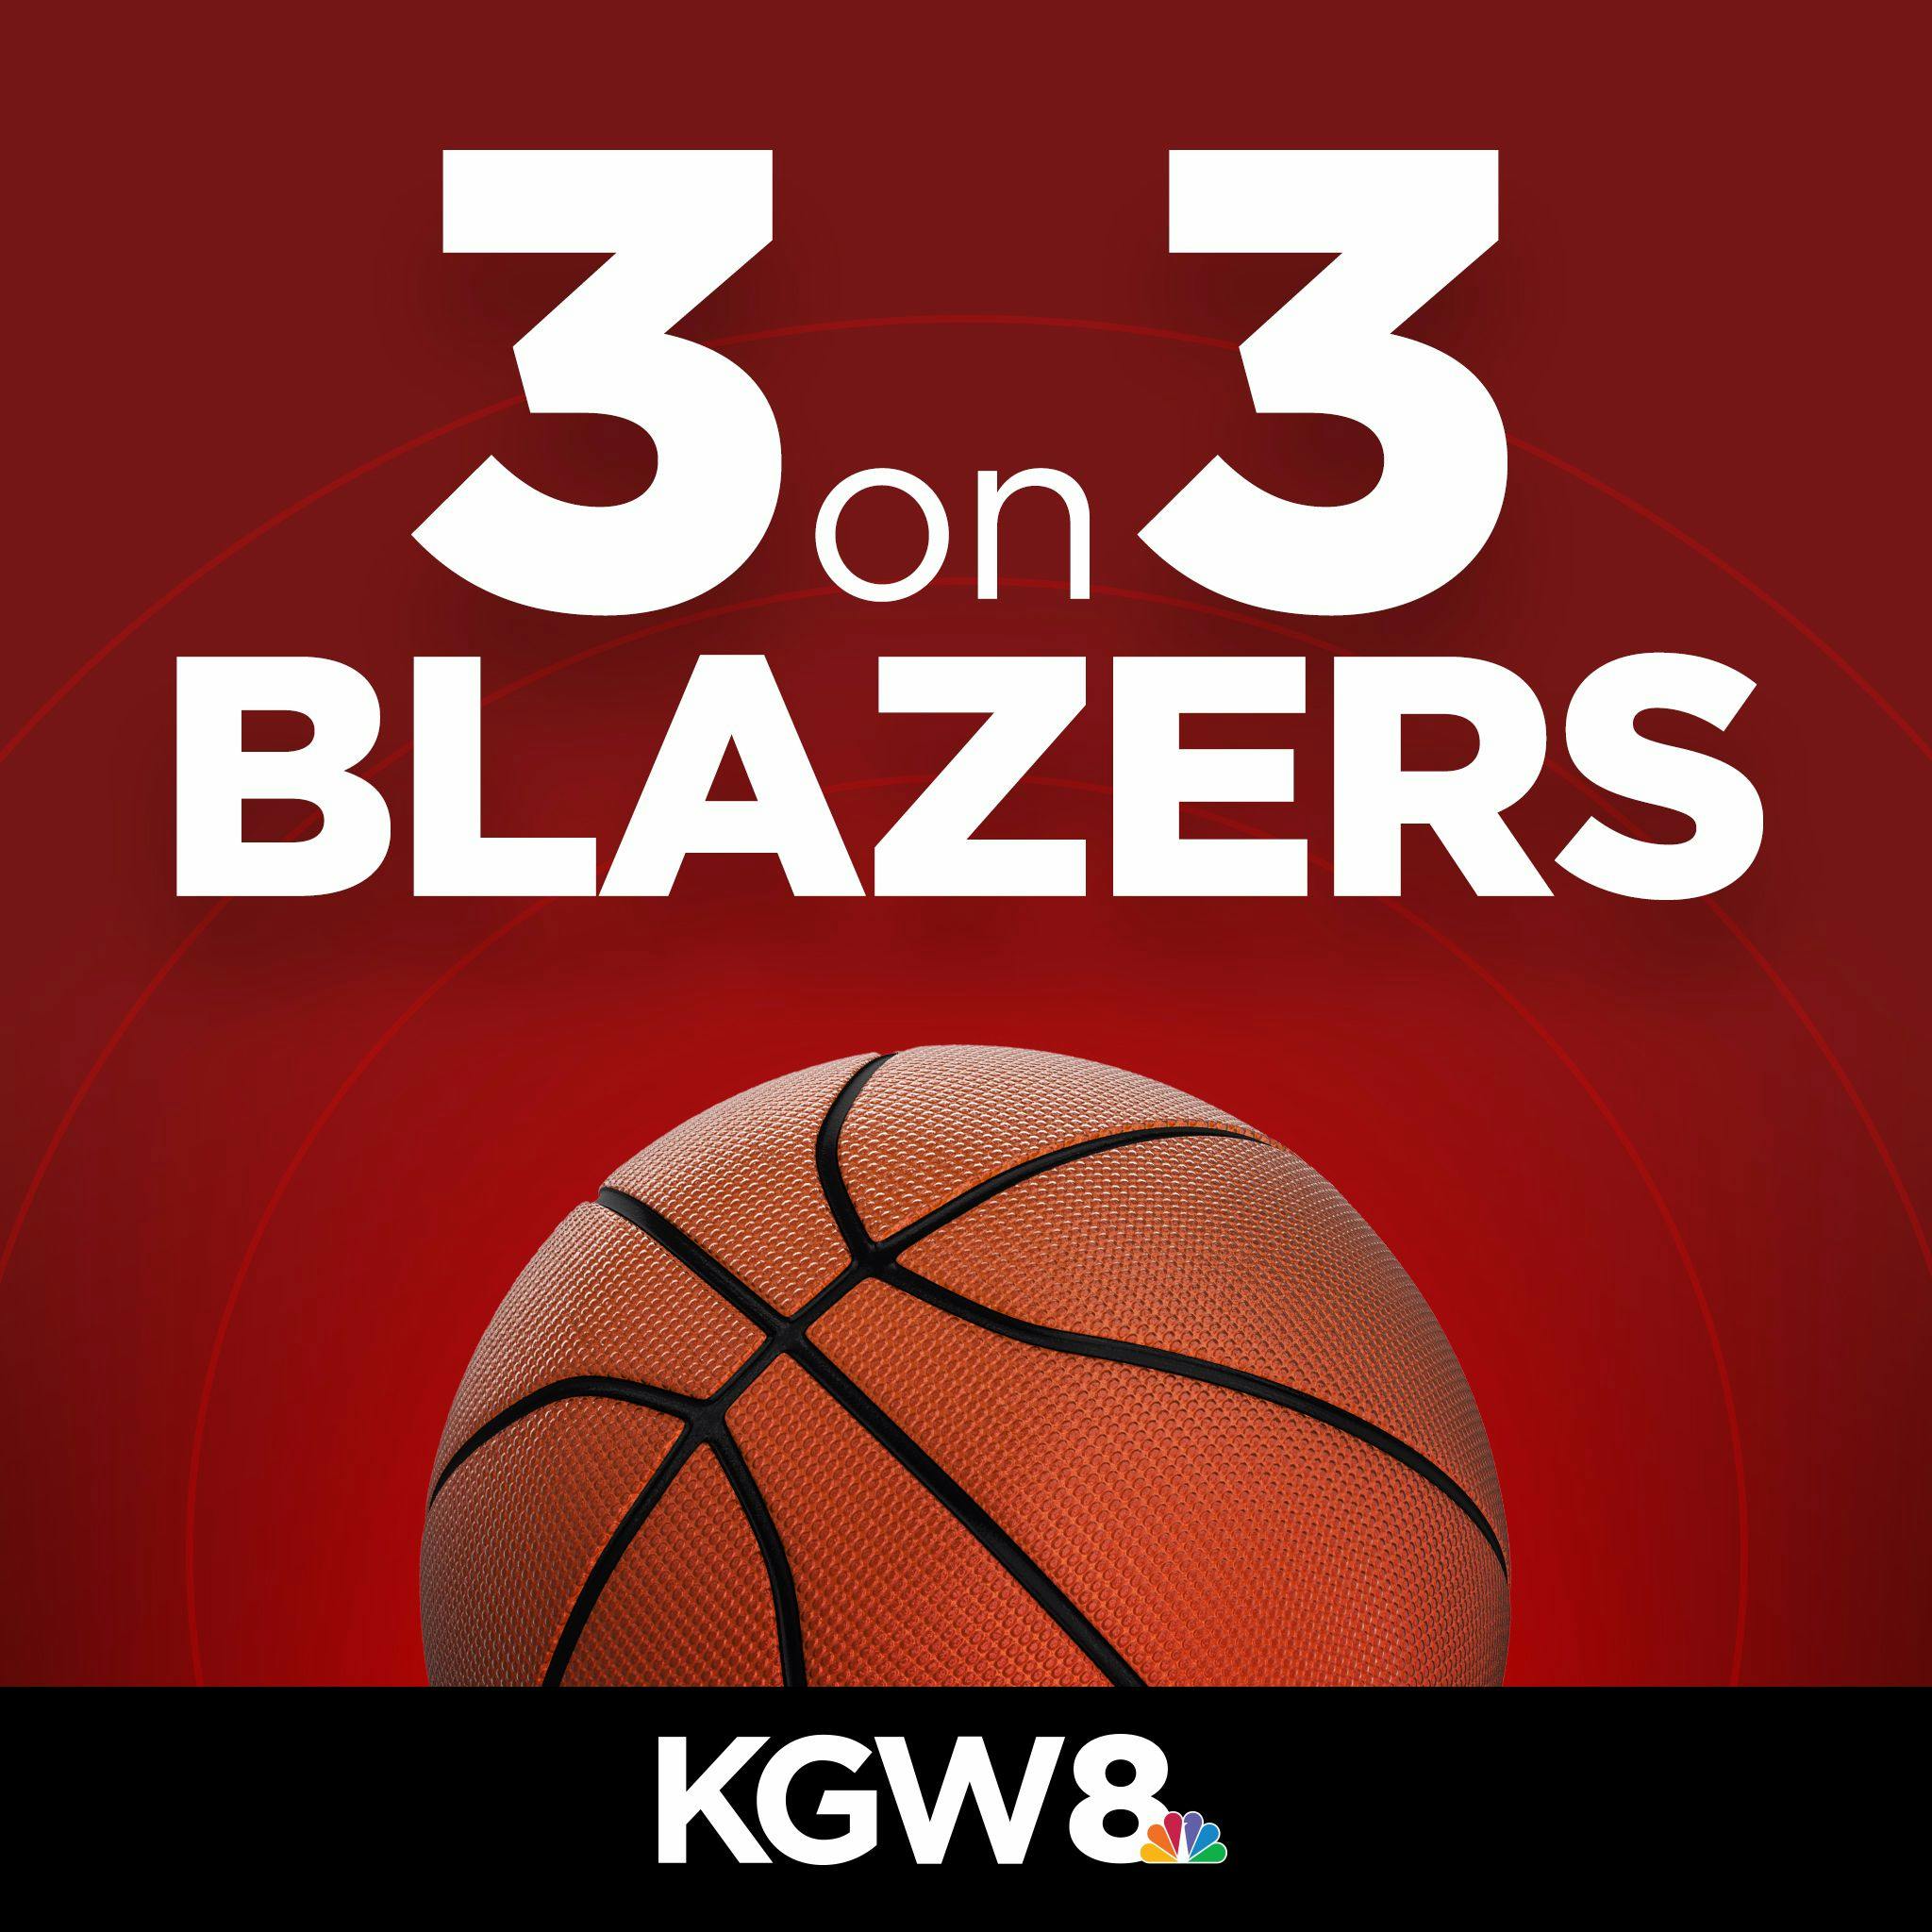 Blazers & NBA season preview!